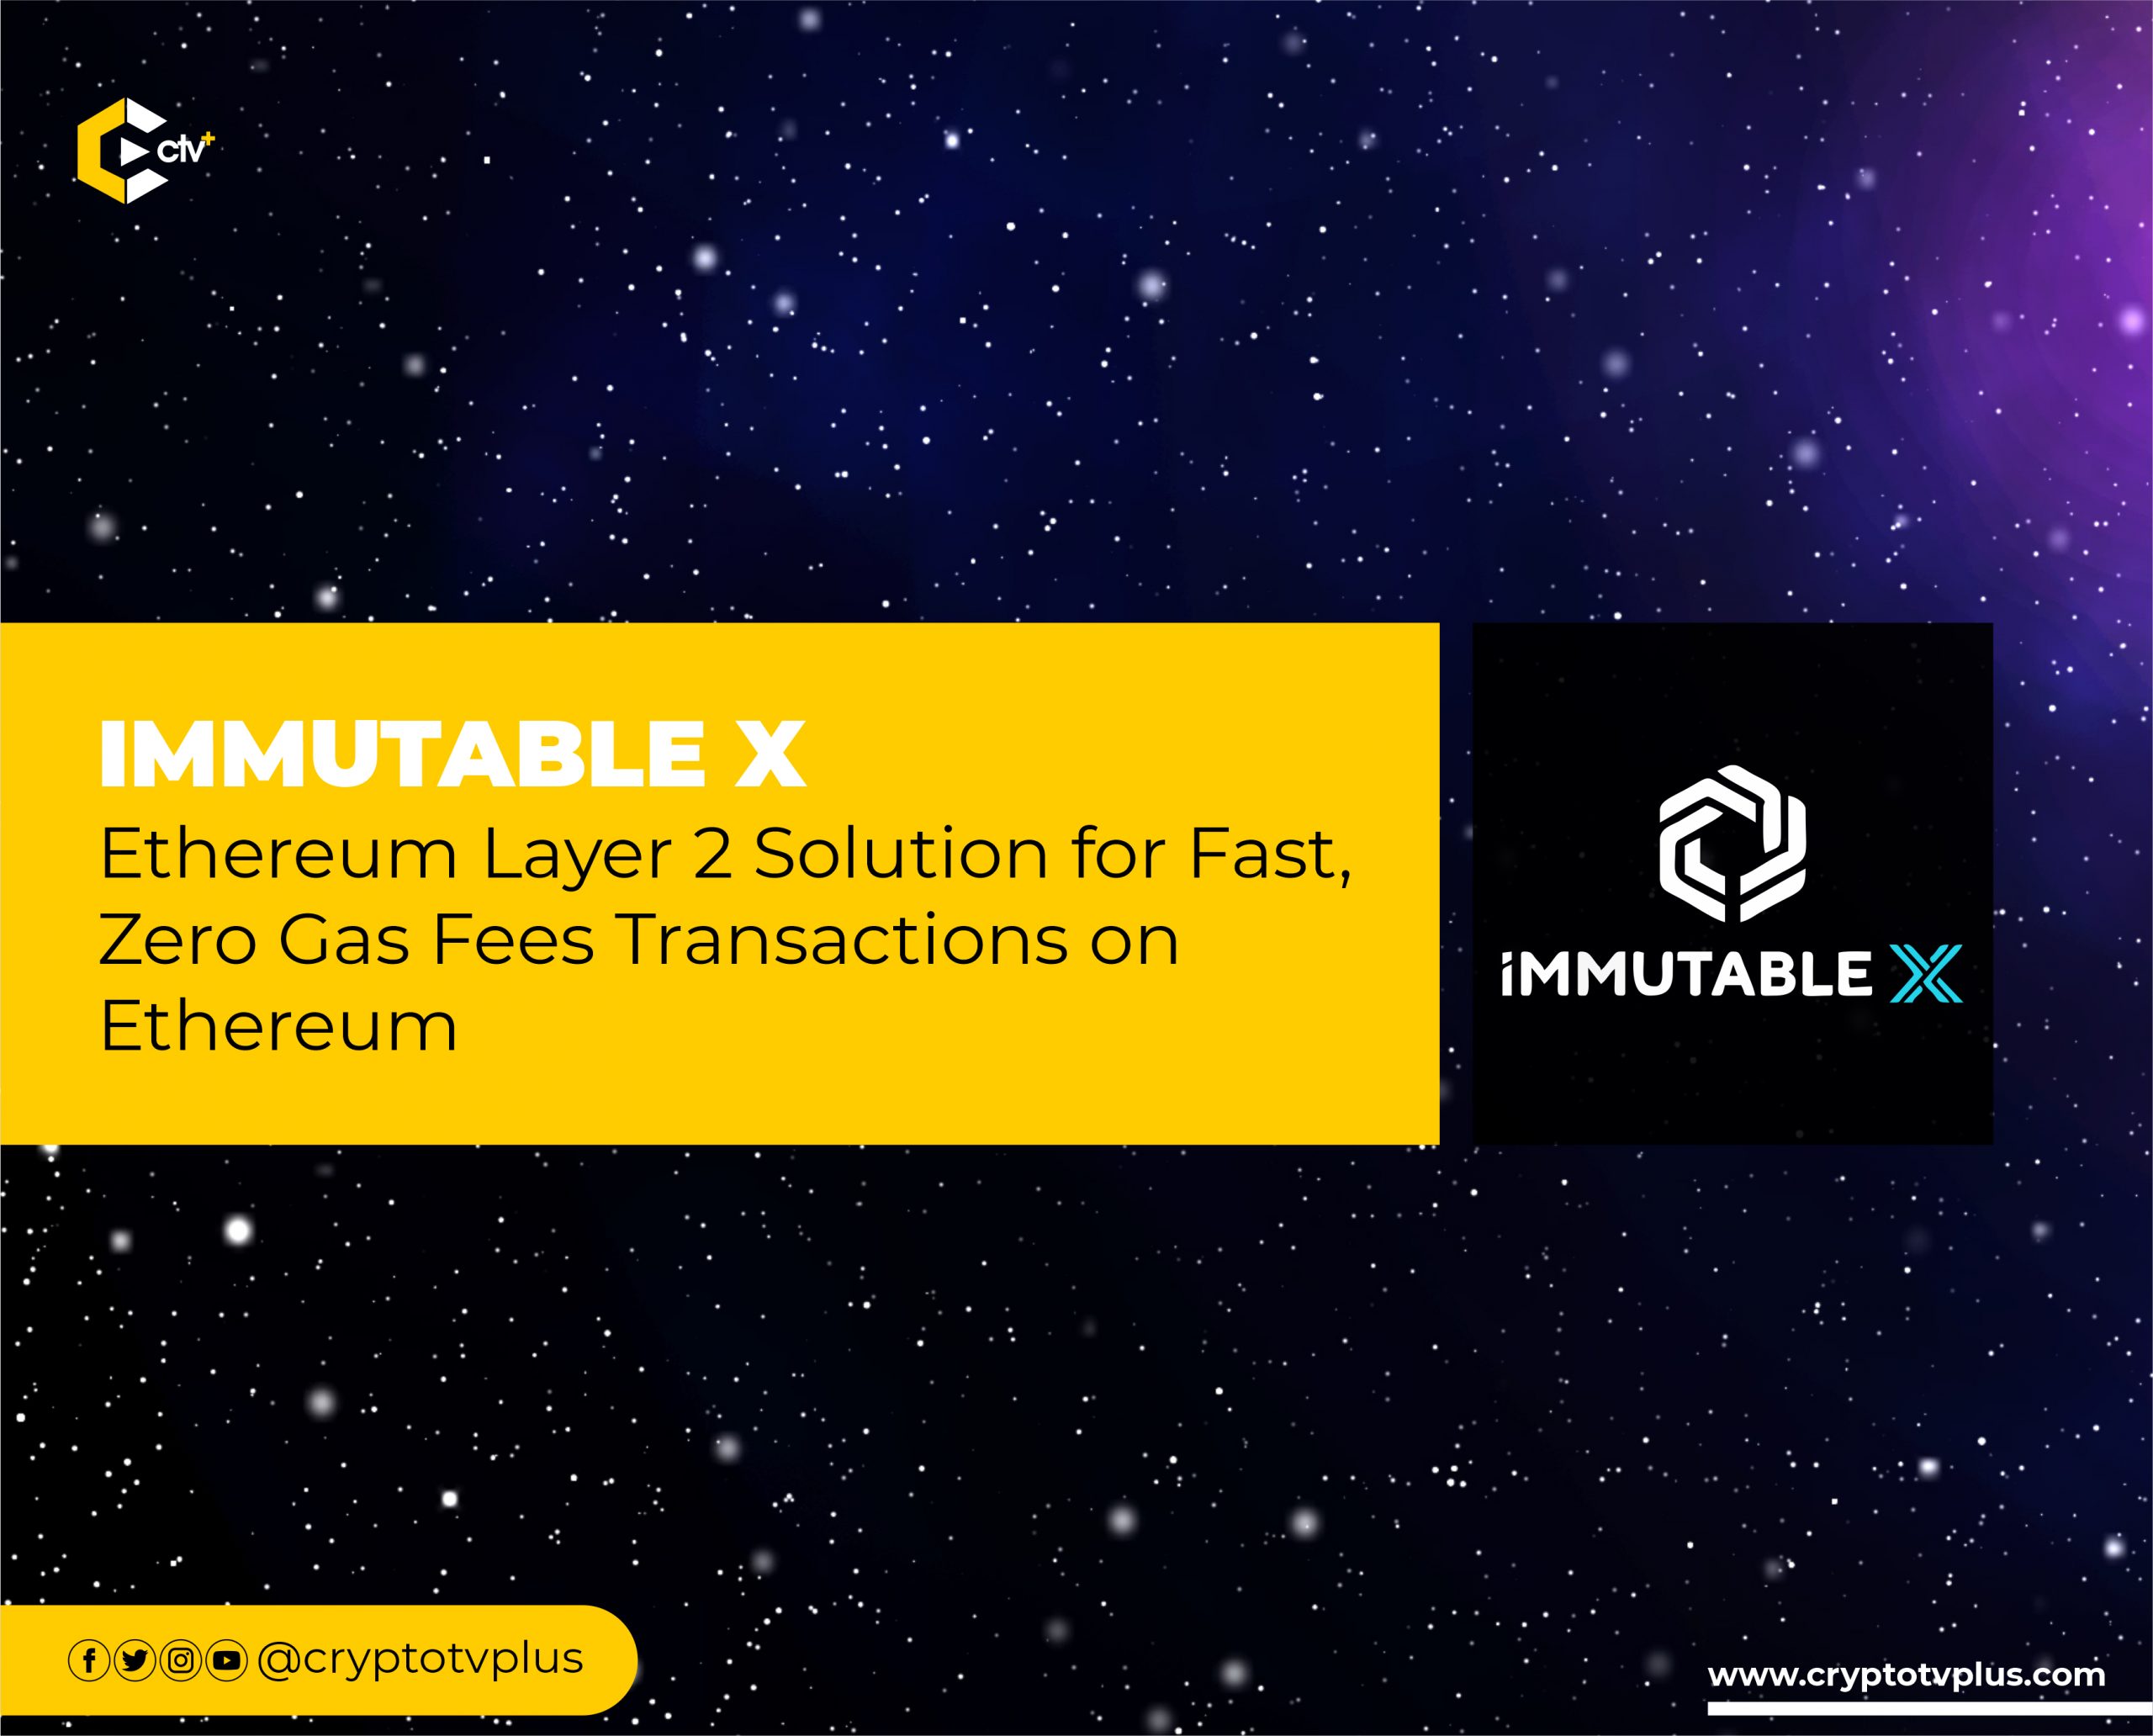 Immutable X Introduces the Unity SDK